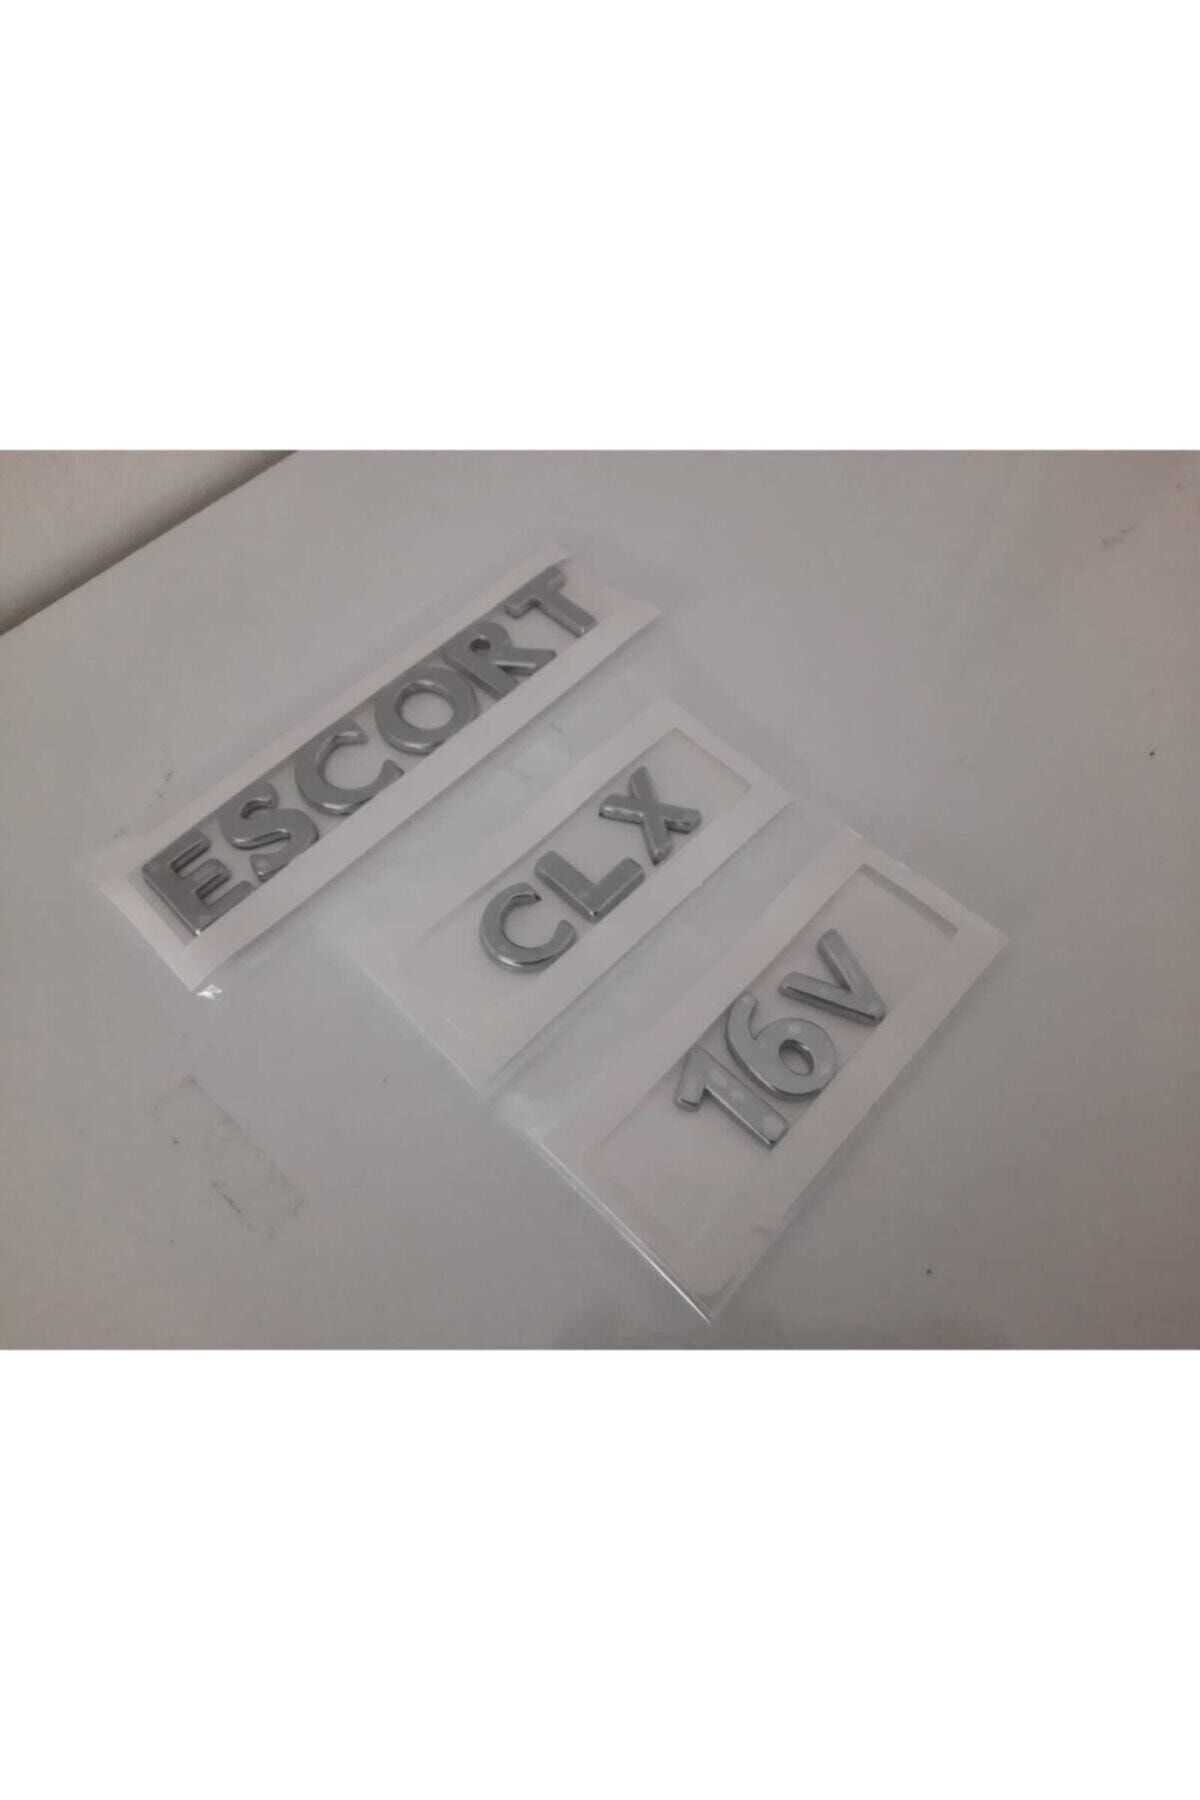 Escort Clx 16v Yazı-3 Adet Takım-yüksek Kalite